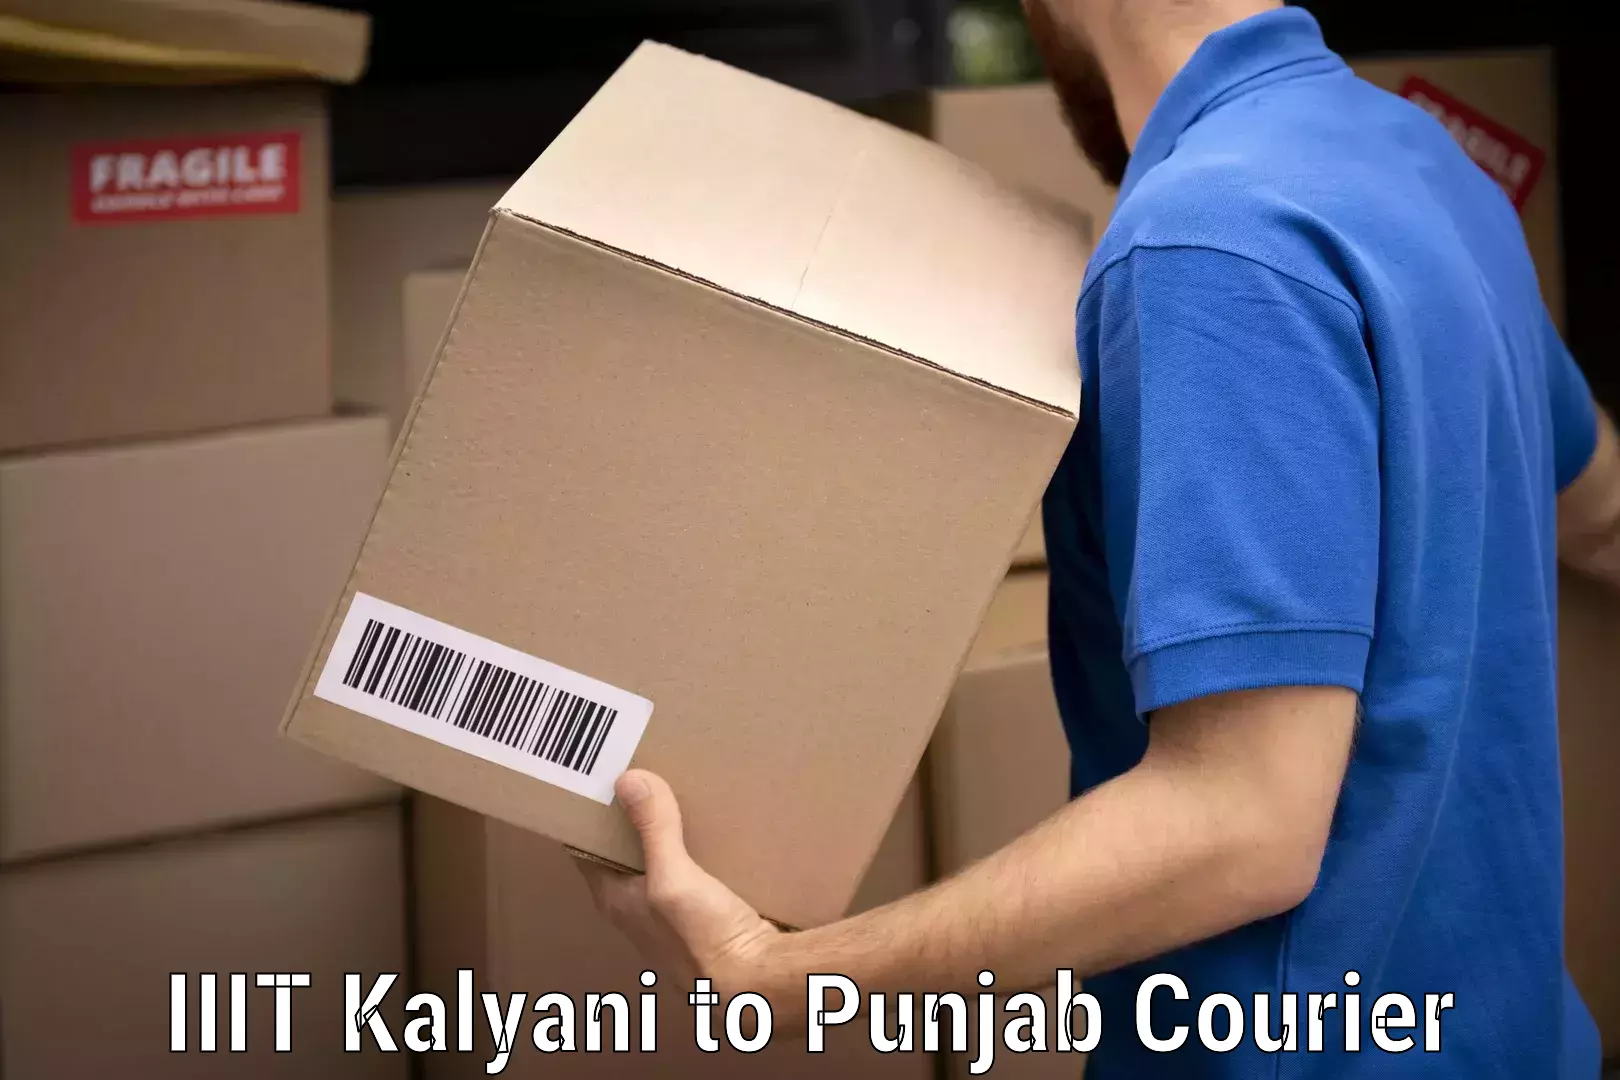 Professional packing services IIIT Kalyani to Punjab